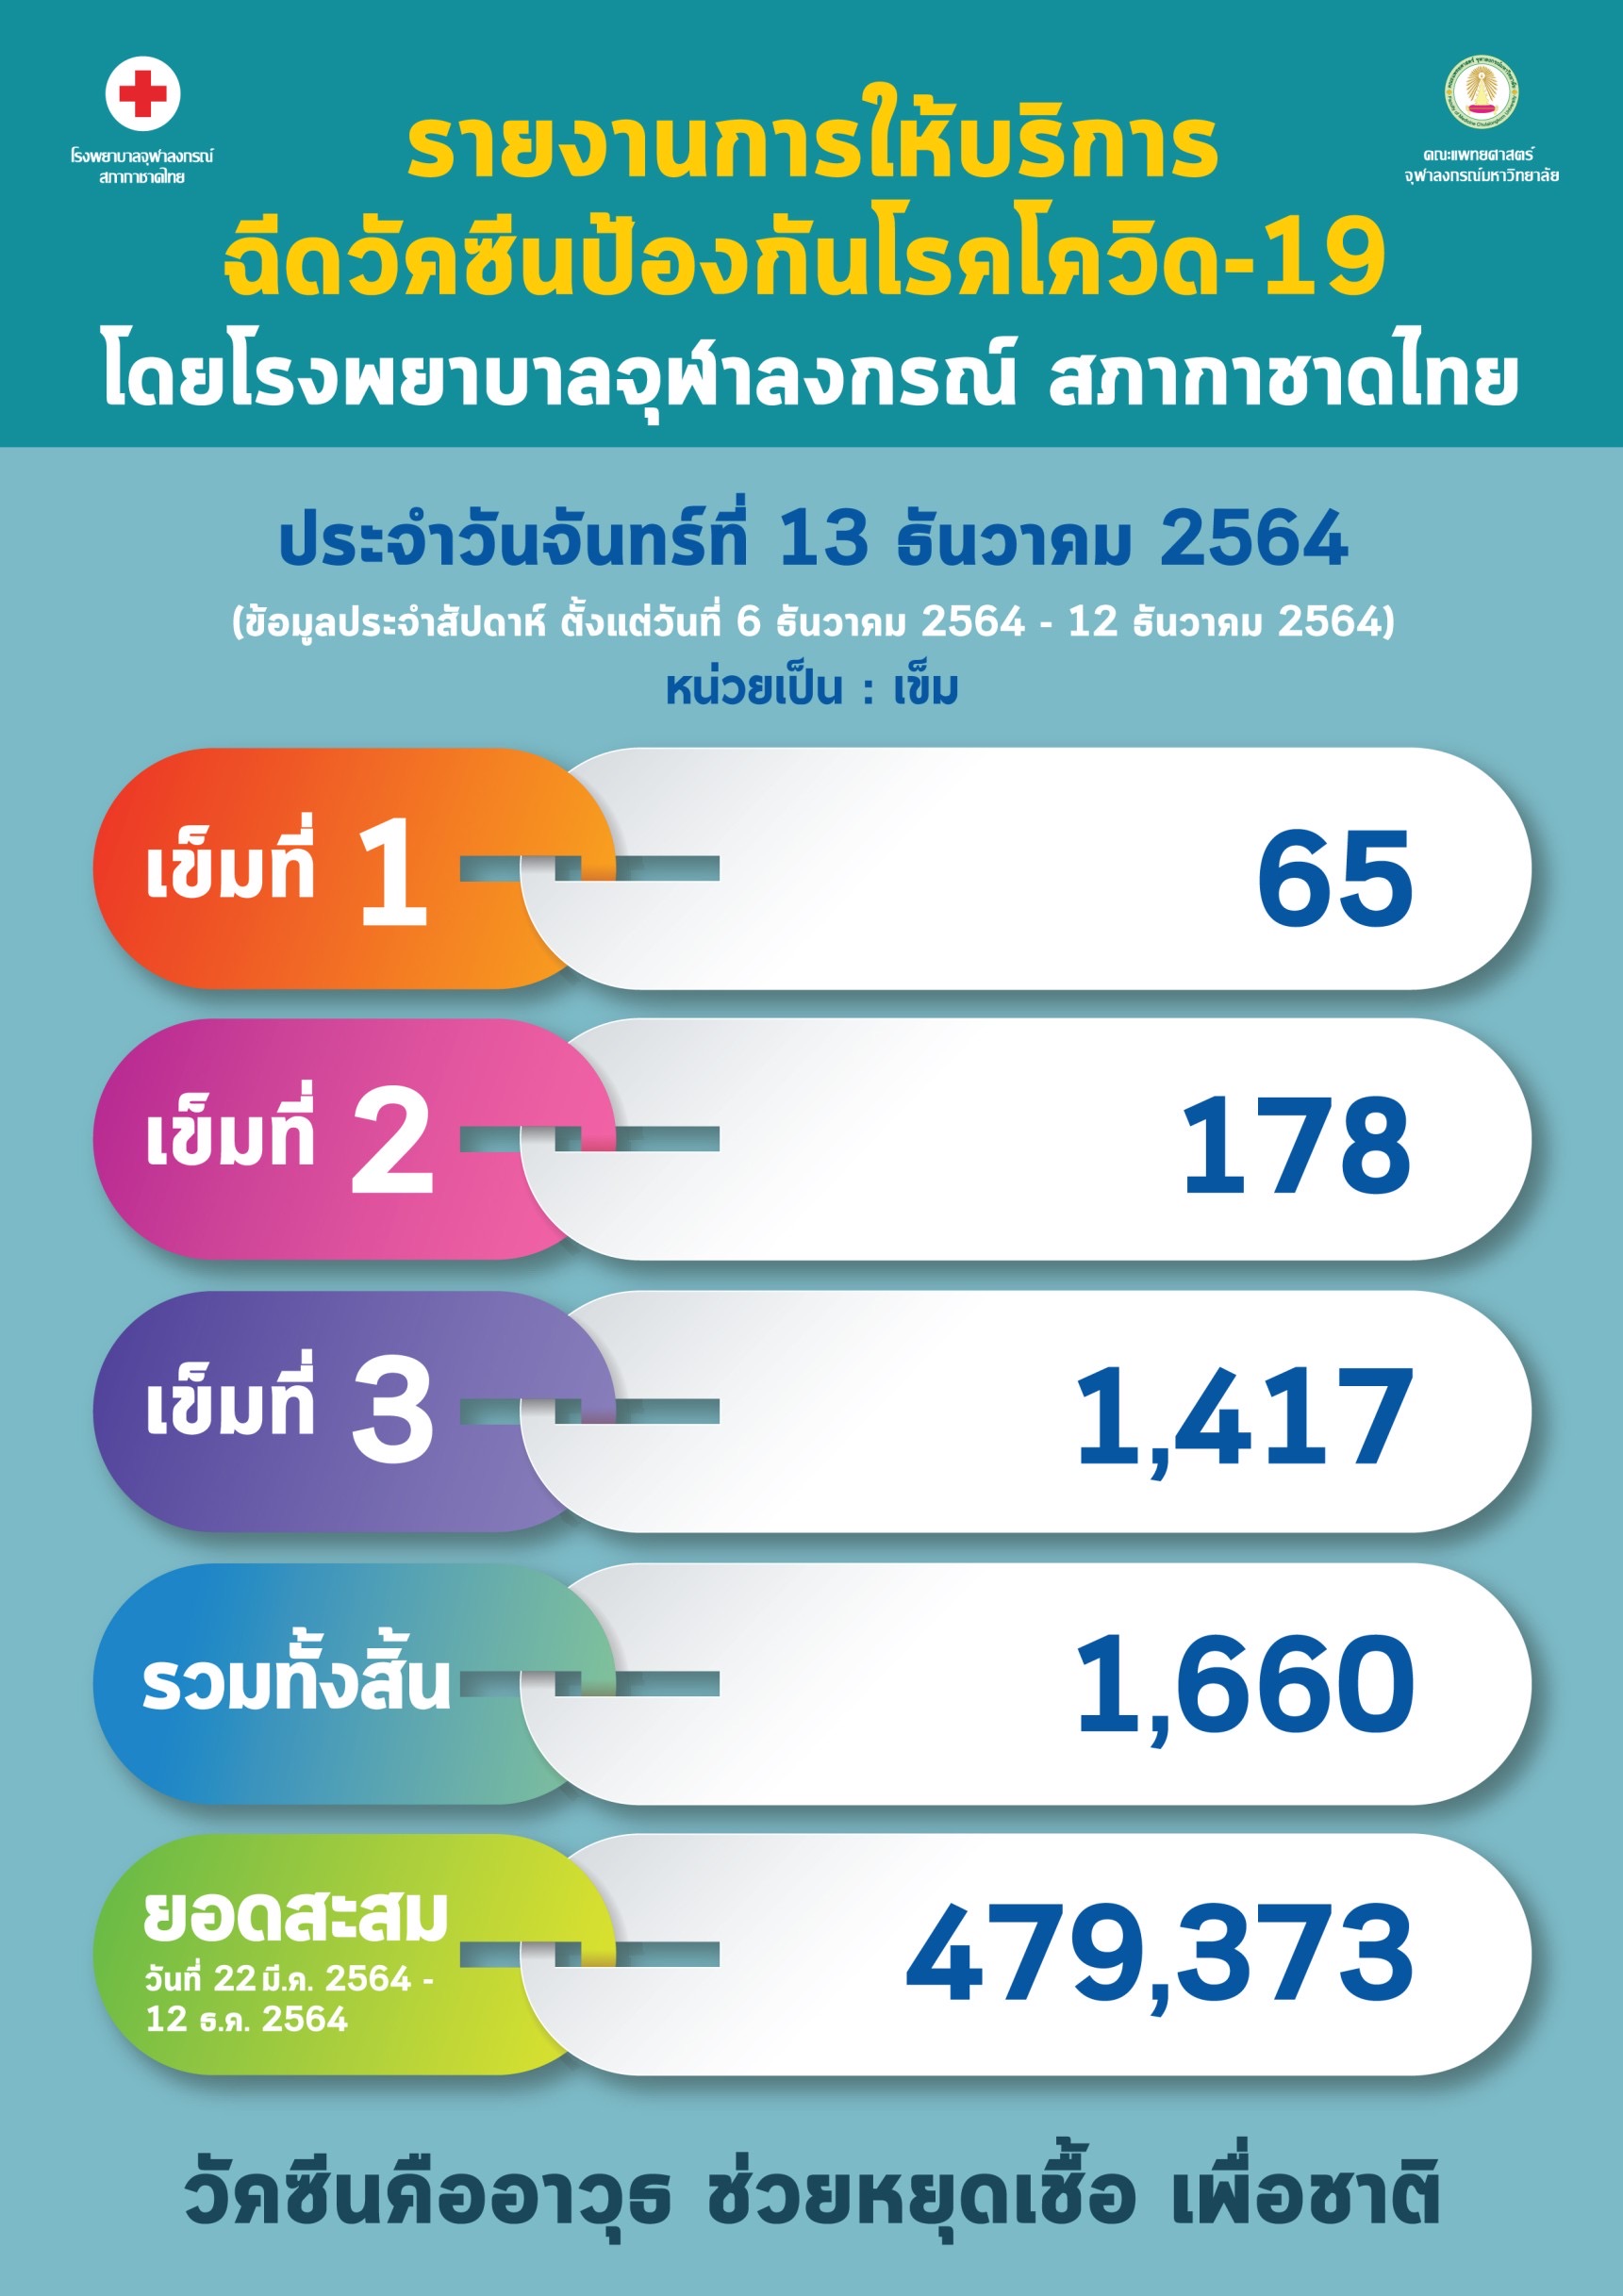 รายงานการให้บริการฉีดวัคซีนป้องกันโรคโควิด-19 โดยโรงพยาบาลจุฬาลงกรณ์ สภากาชาดไทยประจำวันจันทร์ที่ 13 ธันวาคม 2564